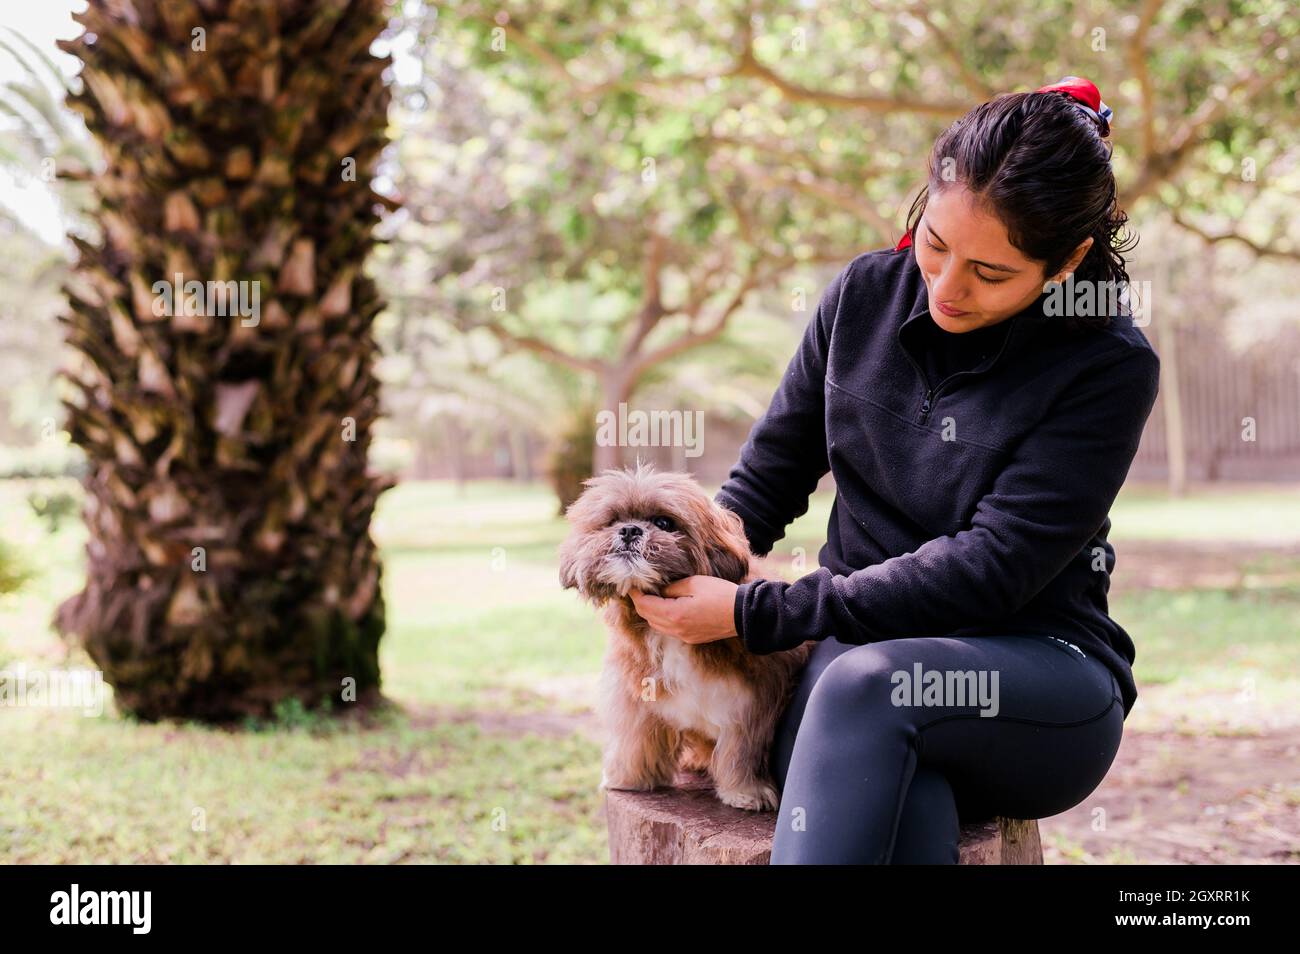 La giovane donna carina sta abbracciando il suo piccolo cucciolo. Amore tra proprietario e cane. Foto all'aperto nel parco, fuoco selettivo. Concetto di stile di vita Foto Stock